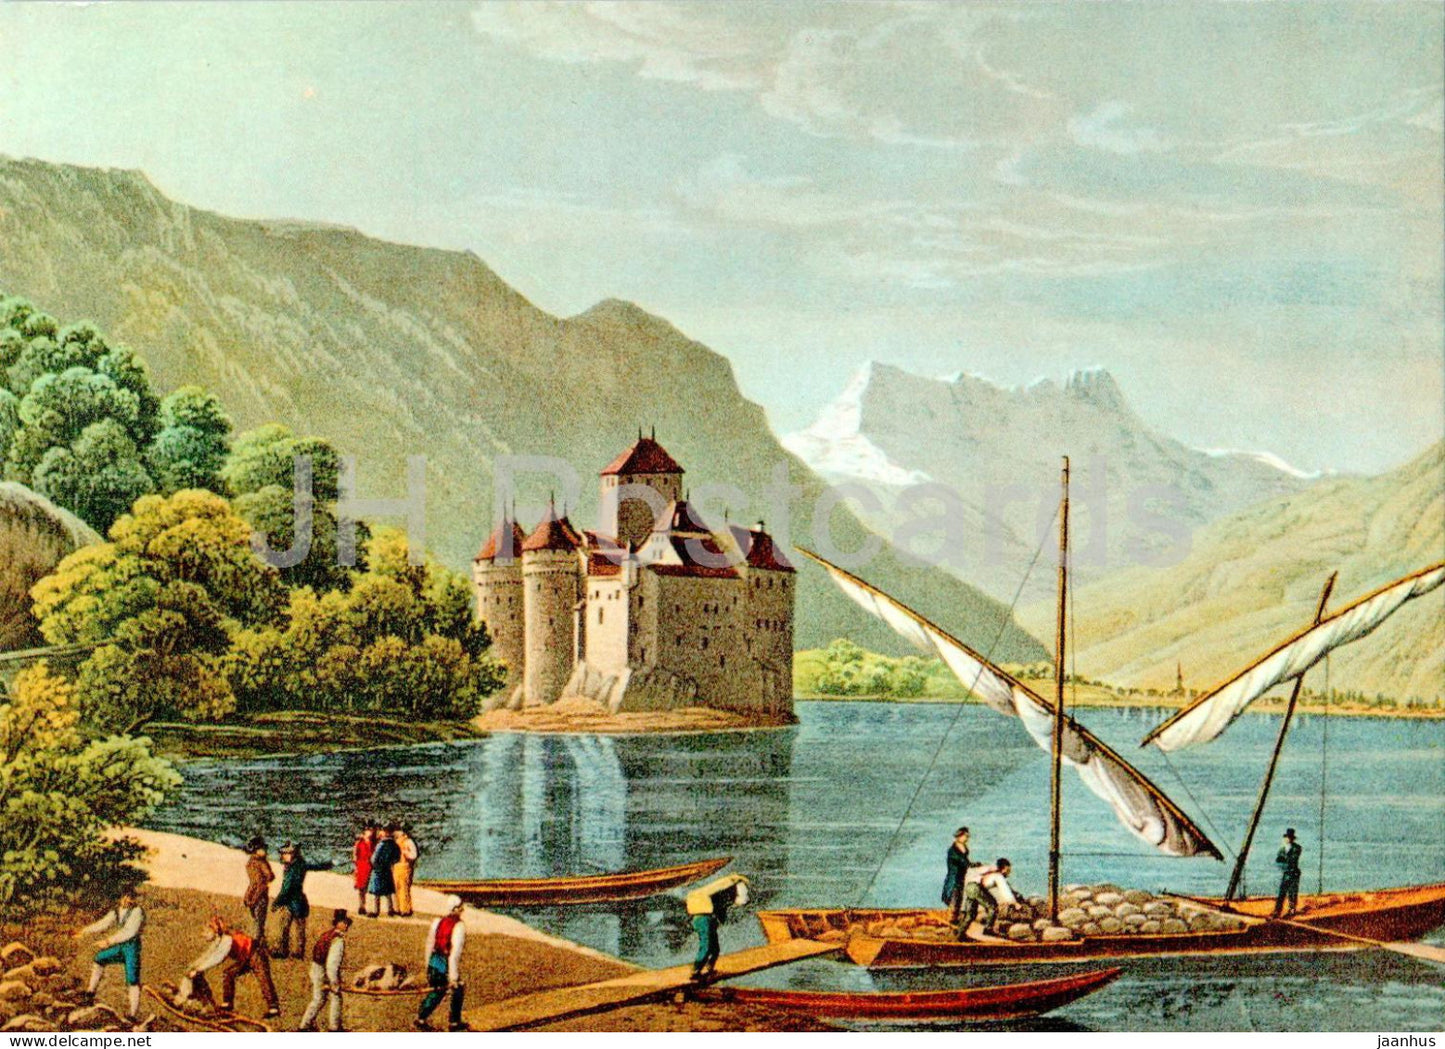 Le Chateau de Chillon et les Dents du Midi - gravure - castle - boat - painting - GA 30 - Switzerland - unused - JH Postcards